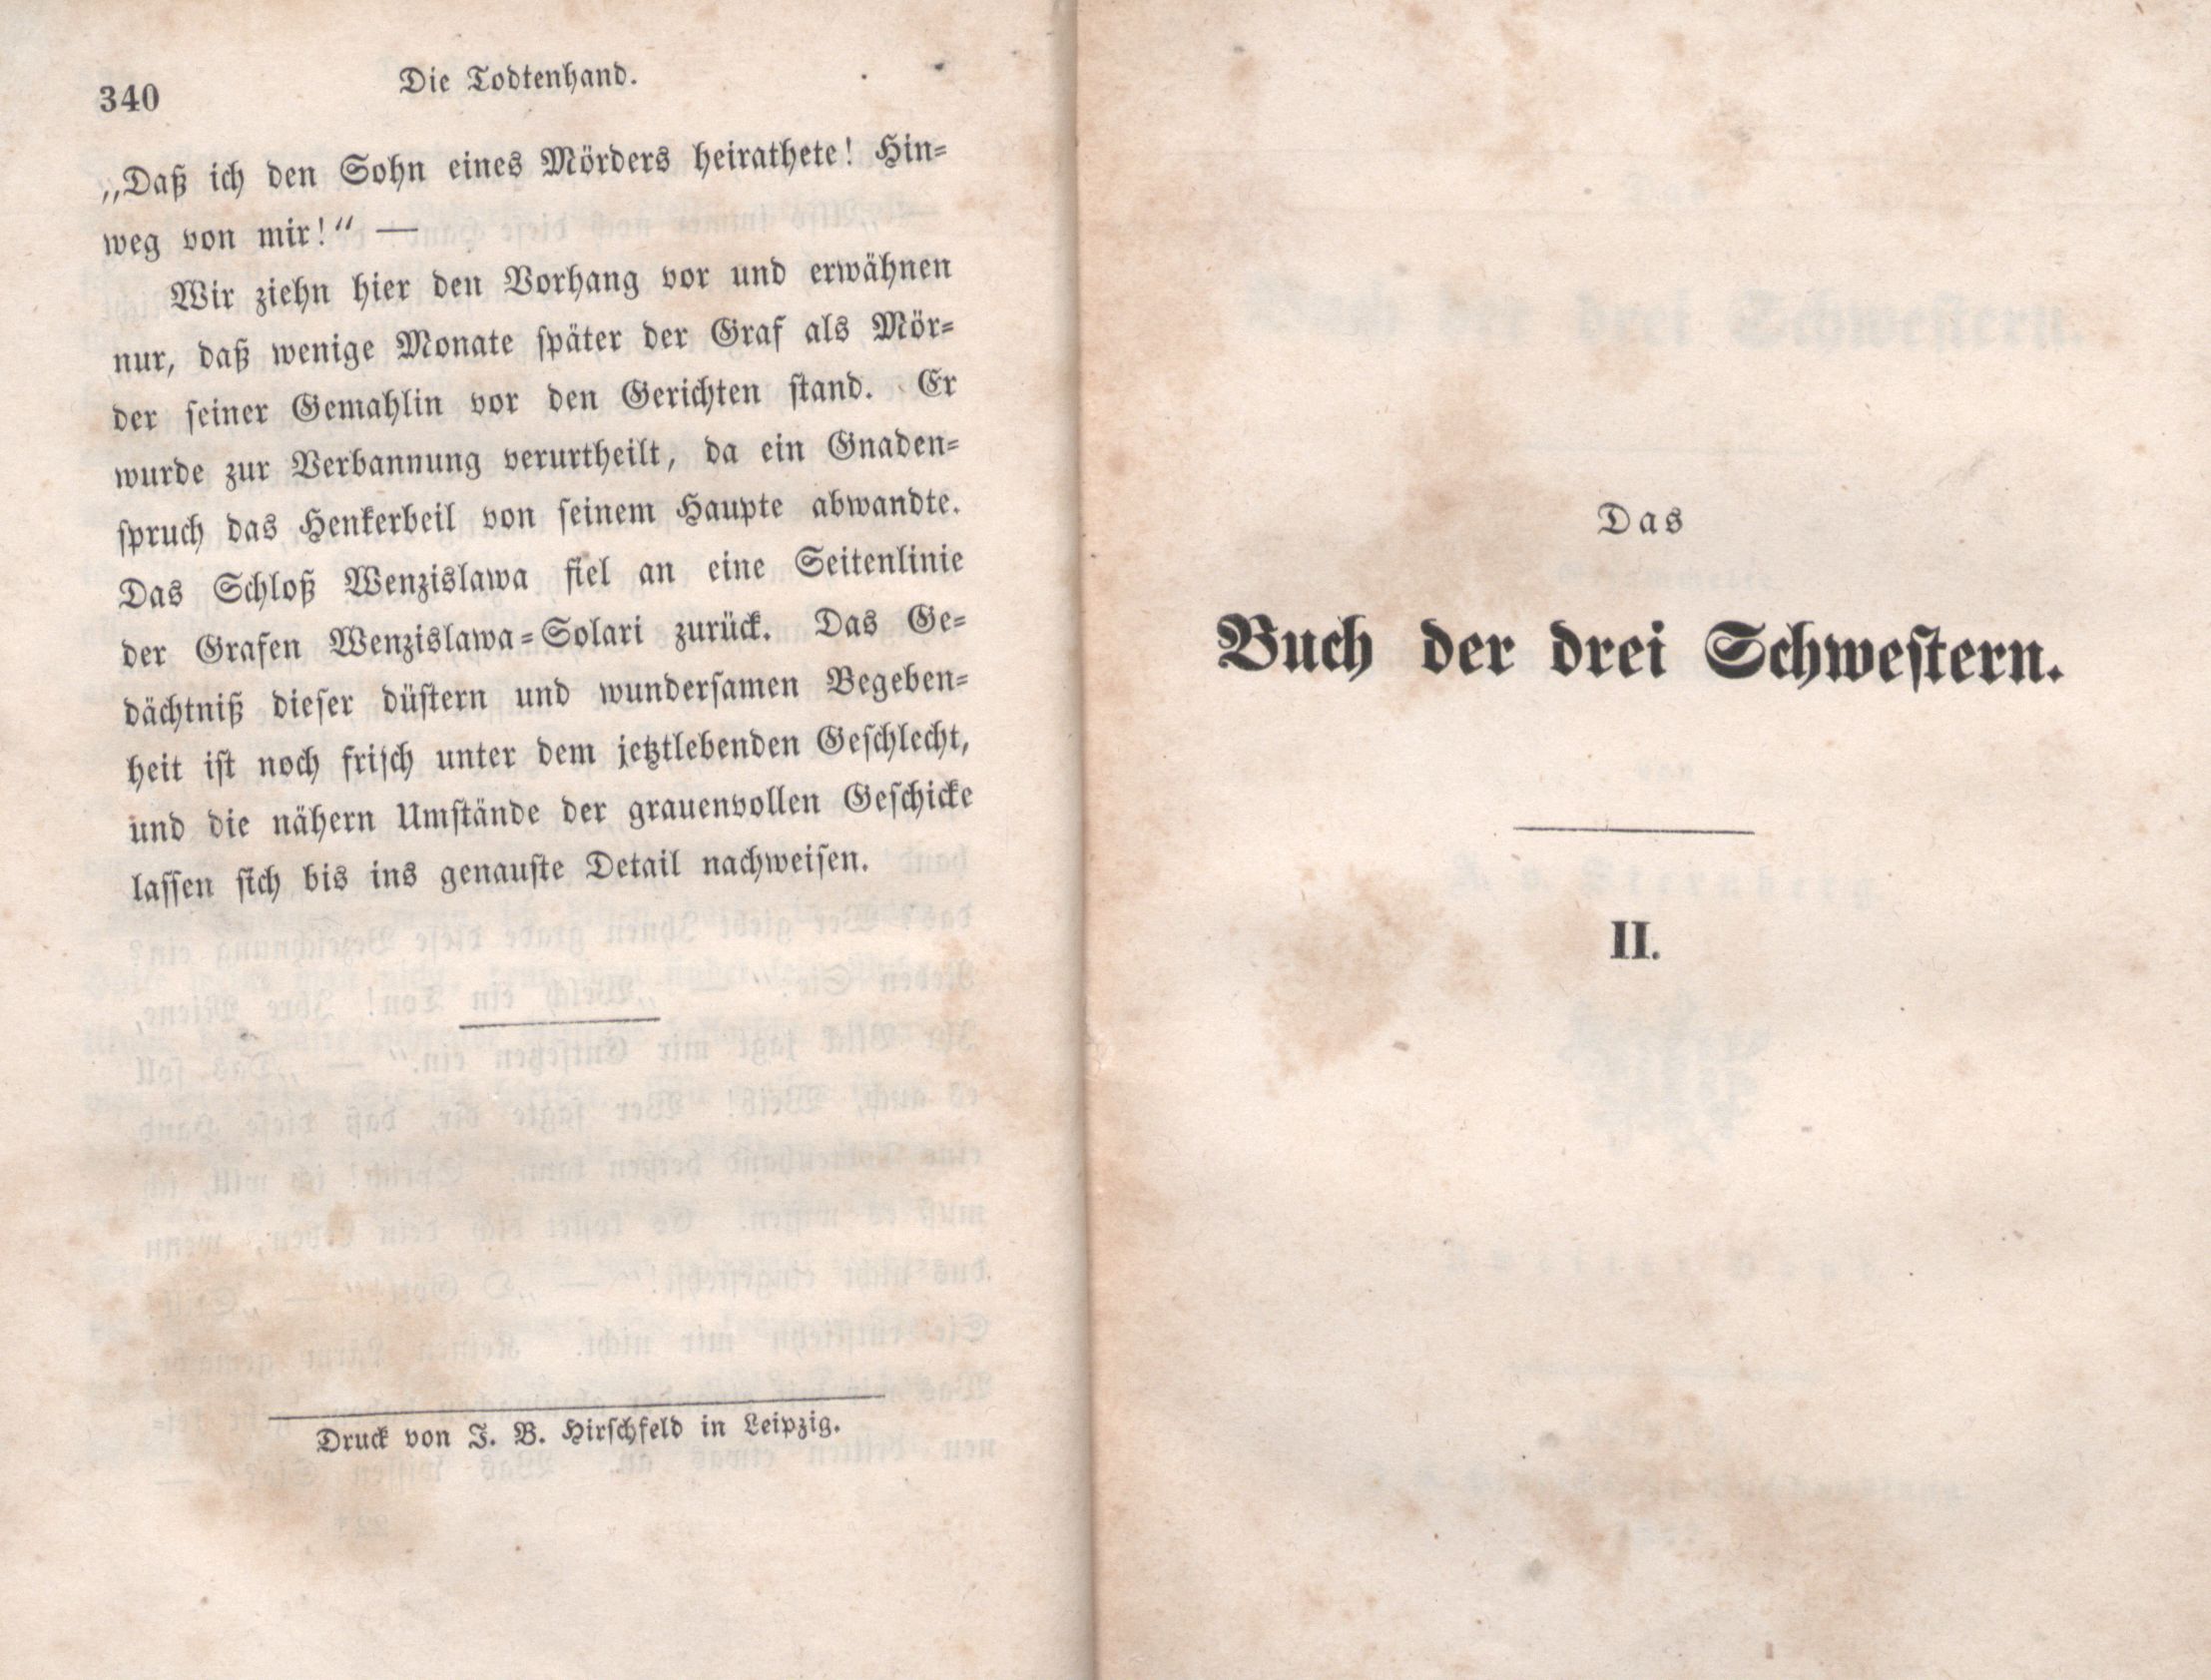 Das Buch der drei Schwestern [1] (1847) | 176. (340) Main body of text